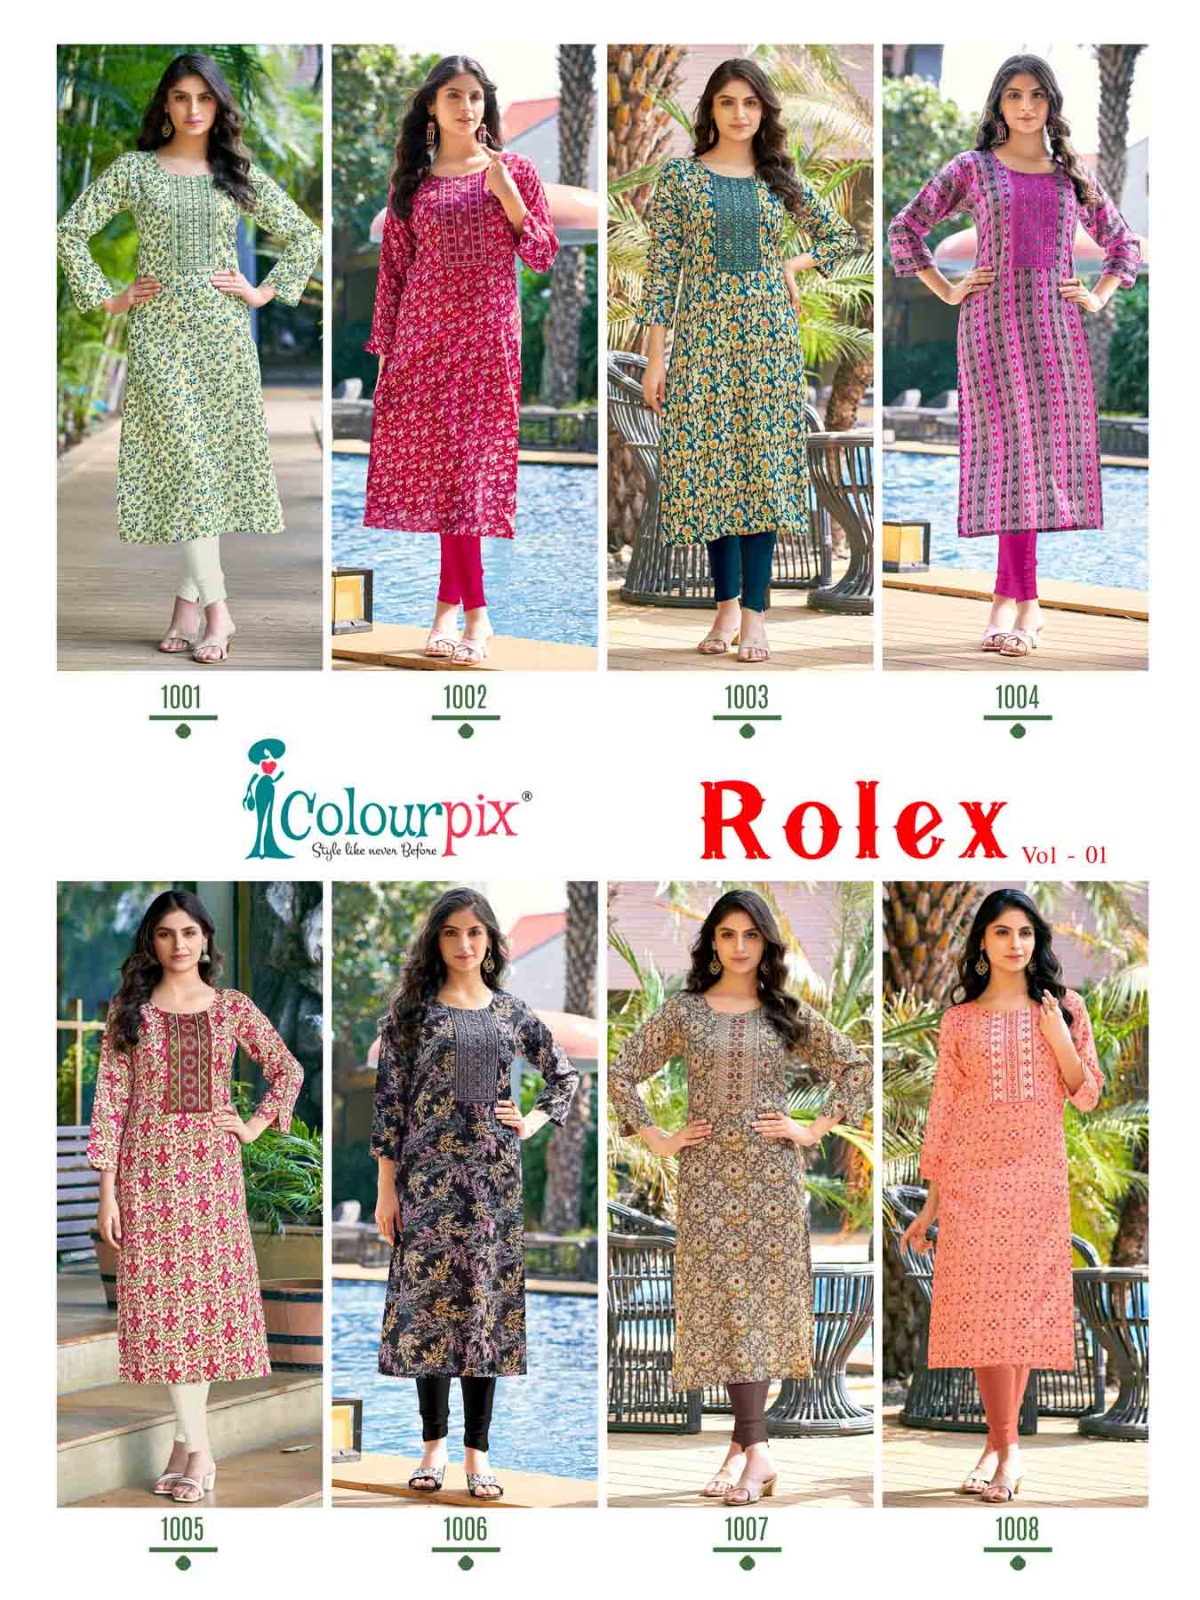 Colourpix Rolex Vol 1 collection 5